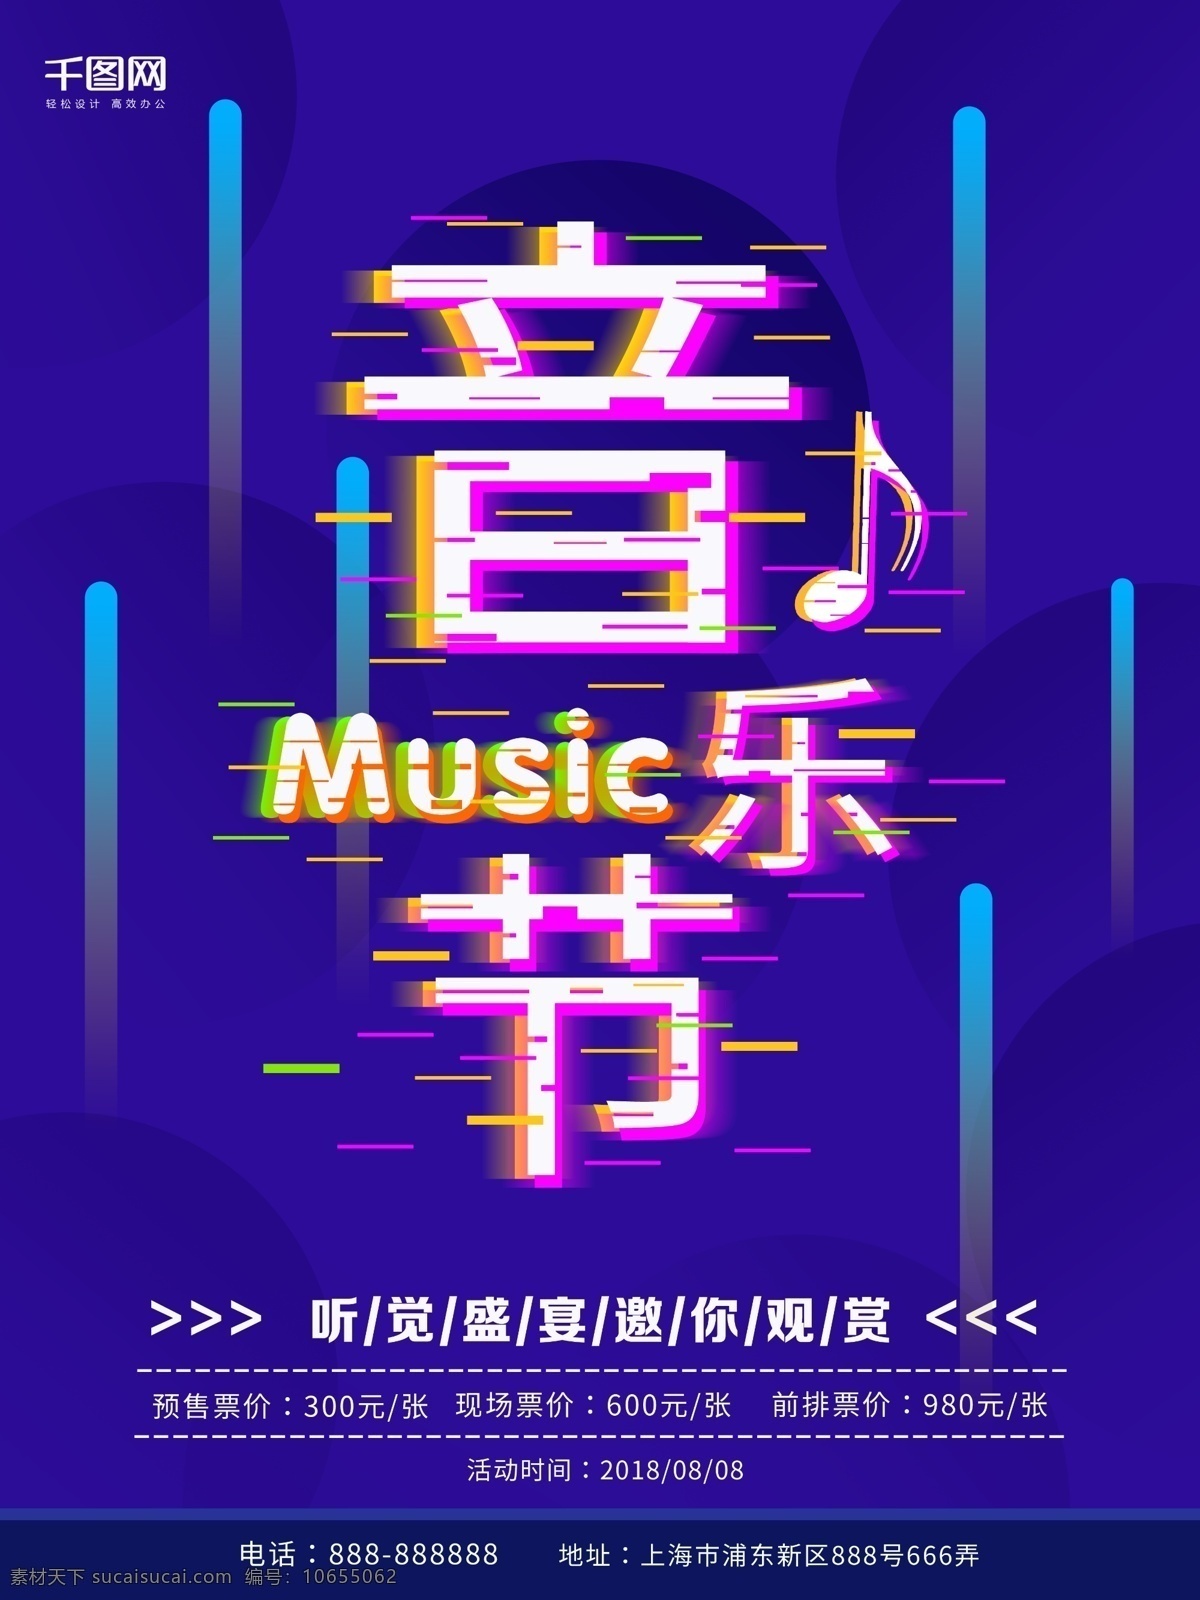 2018 音乐节 音乐 音乐节海报 音符 听觉盛宴